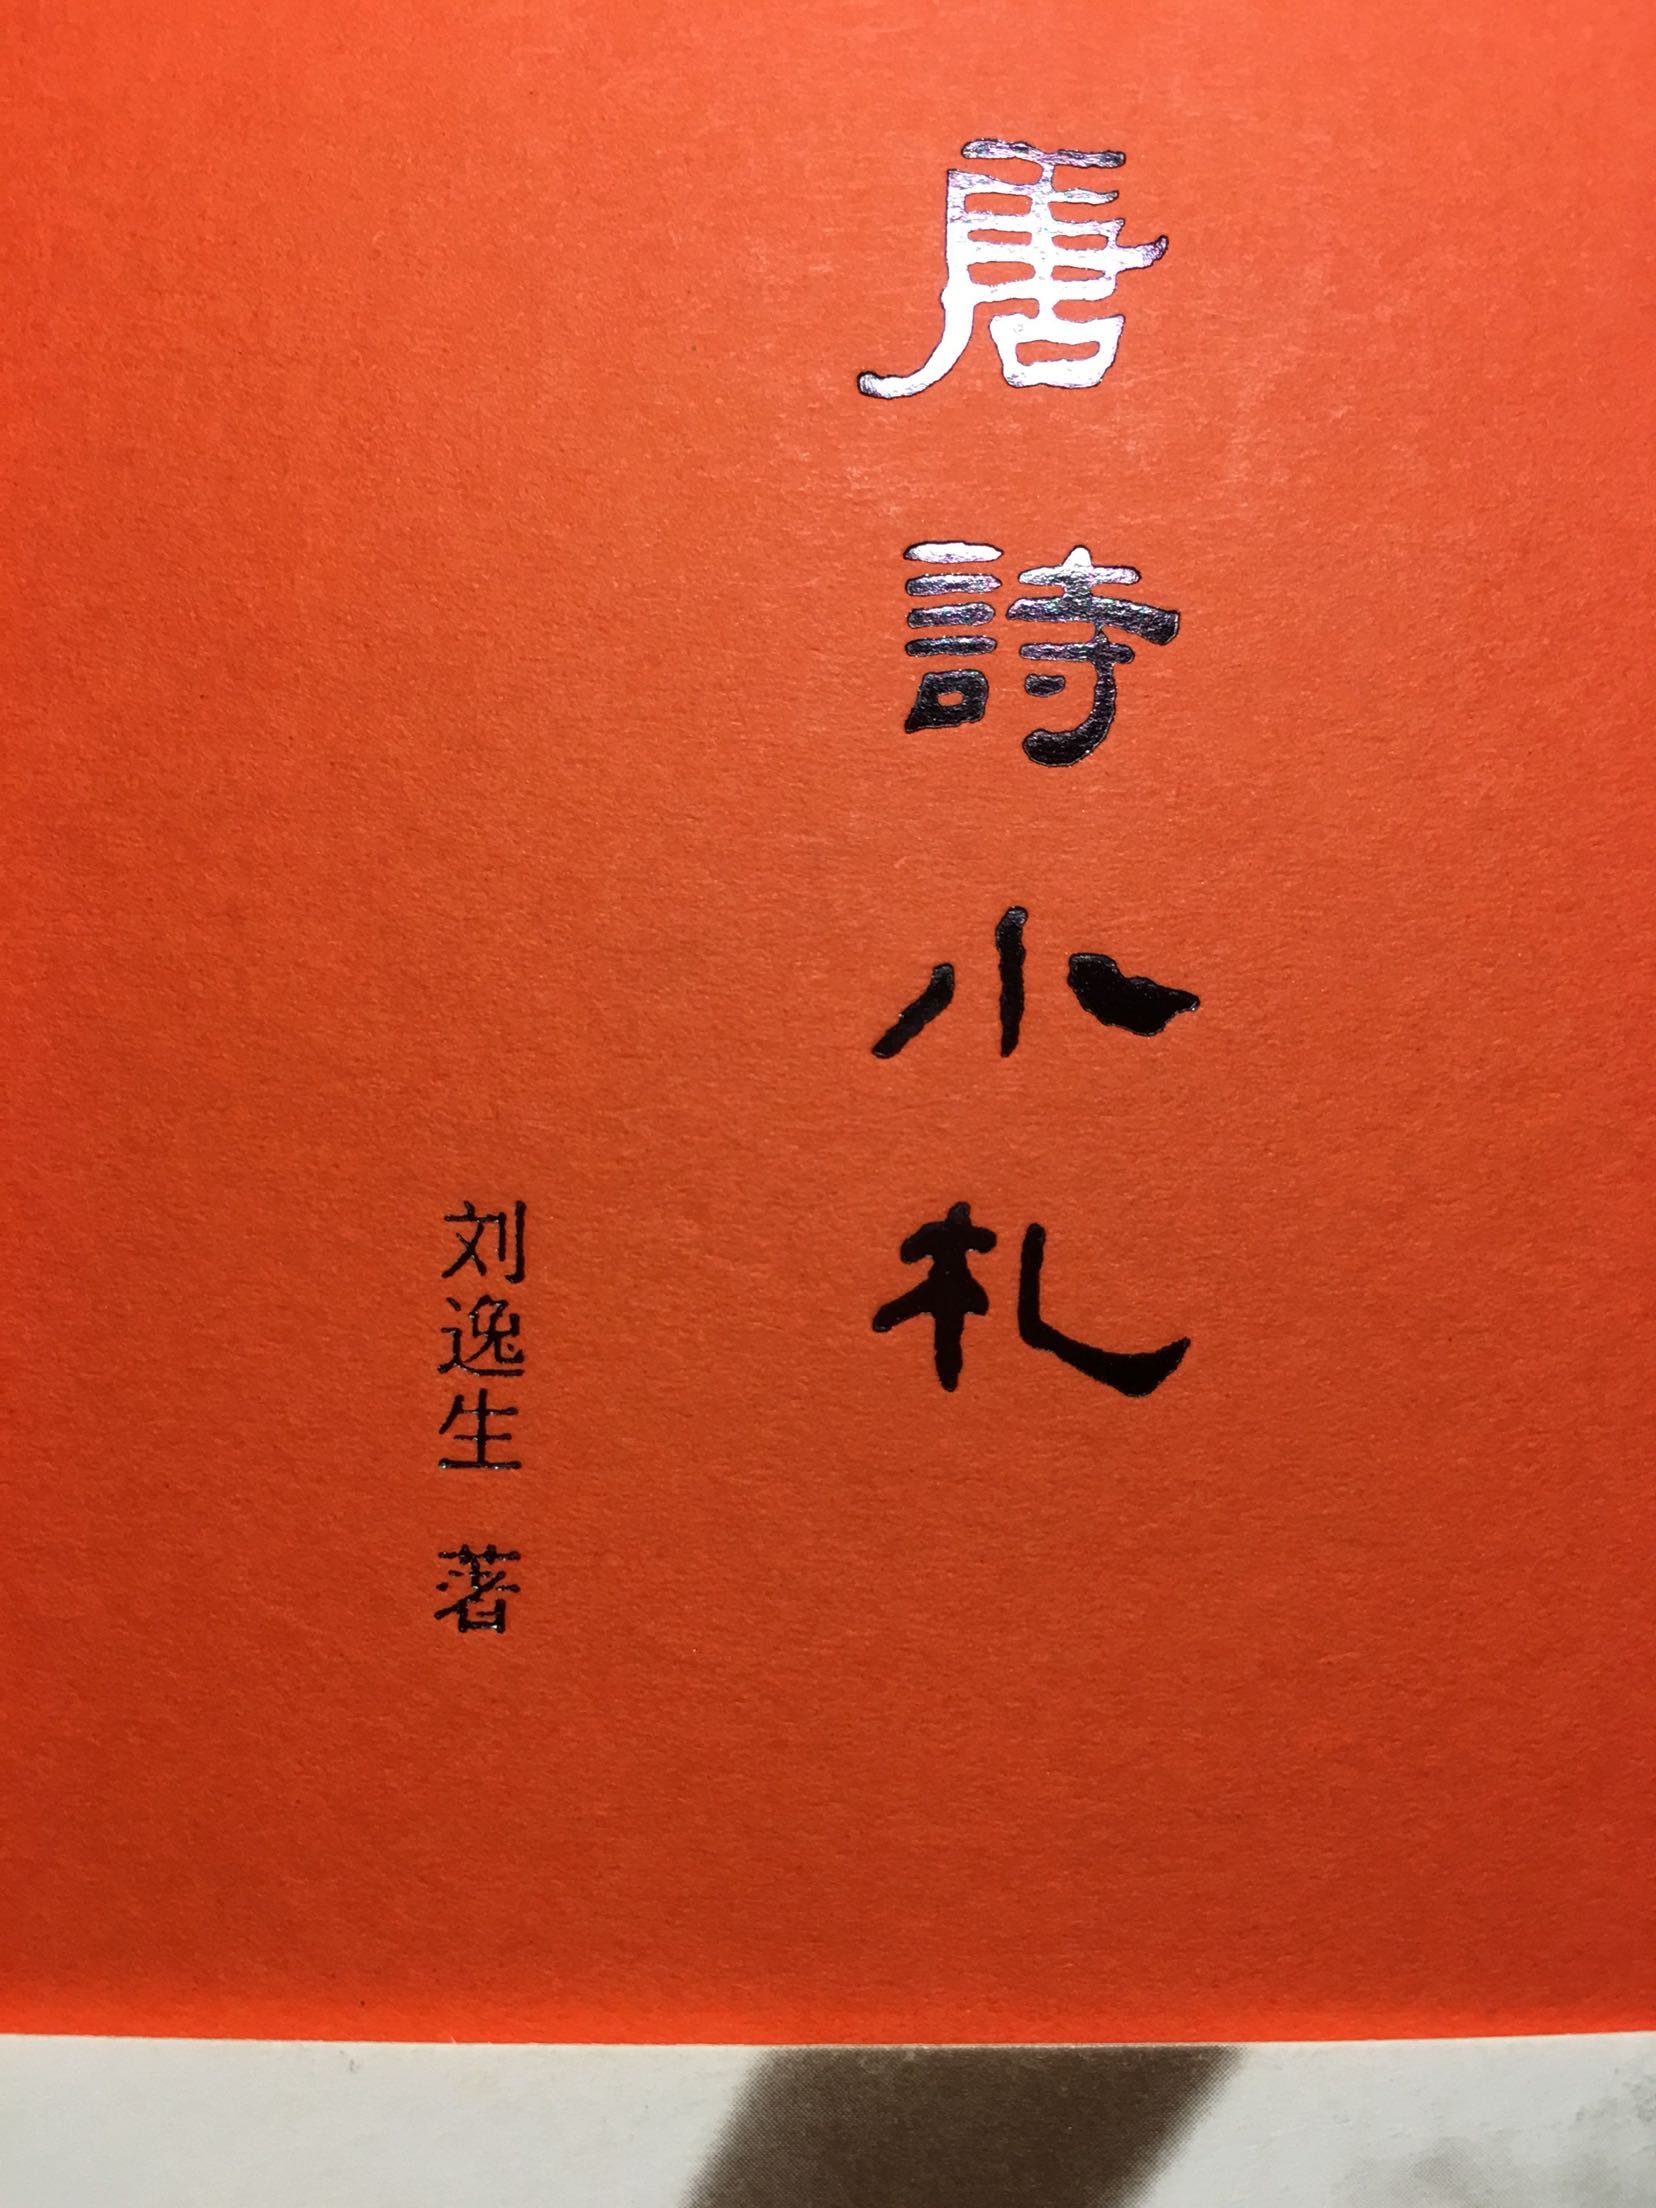 书的手感很好，封面很文艺，内容不错，爱唐诗，所以我觉得这本书挺适合我的，推荐刘逸生老师的作品！